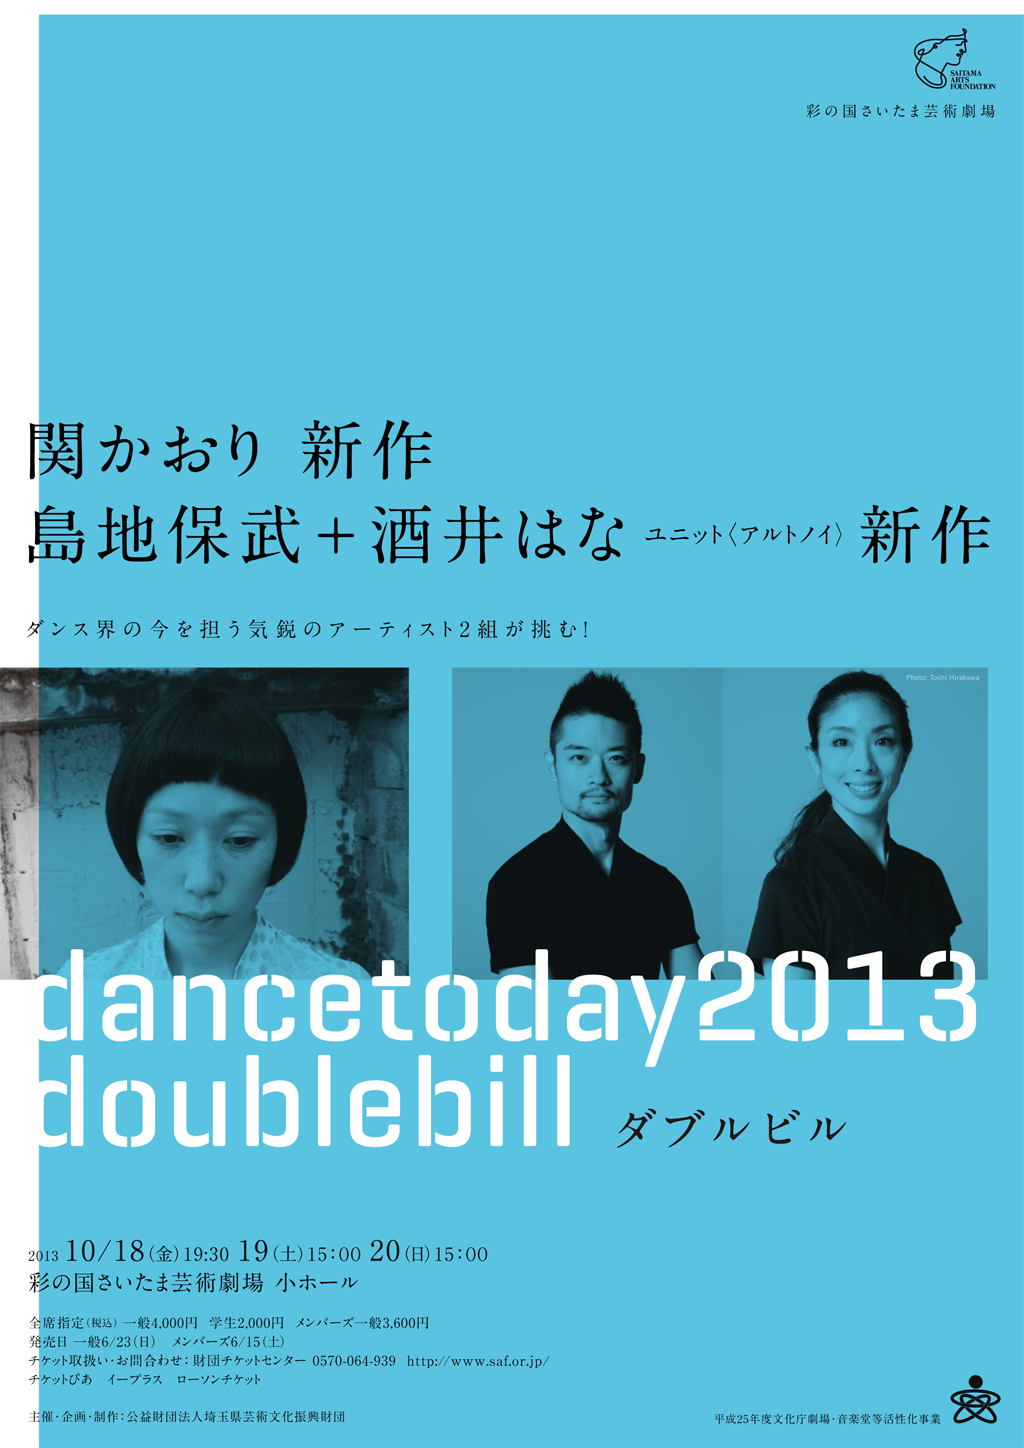 彩の国さいたま芸術劇場 dancetoday2013